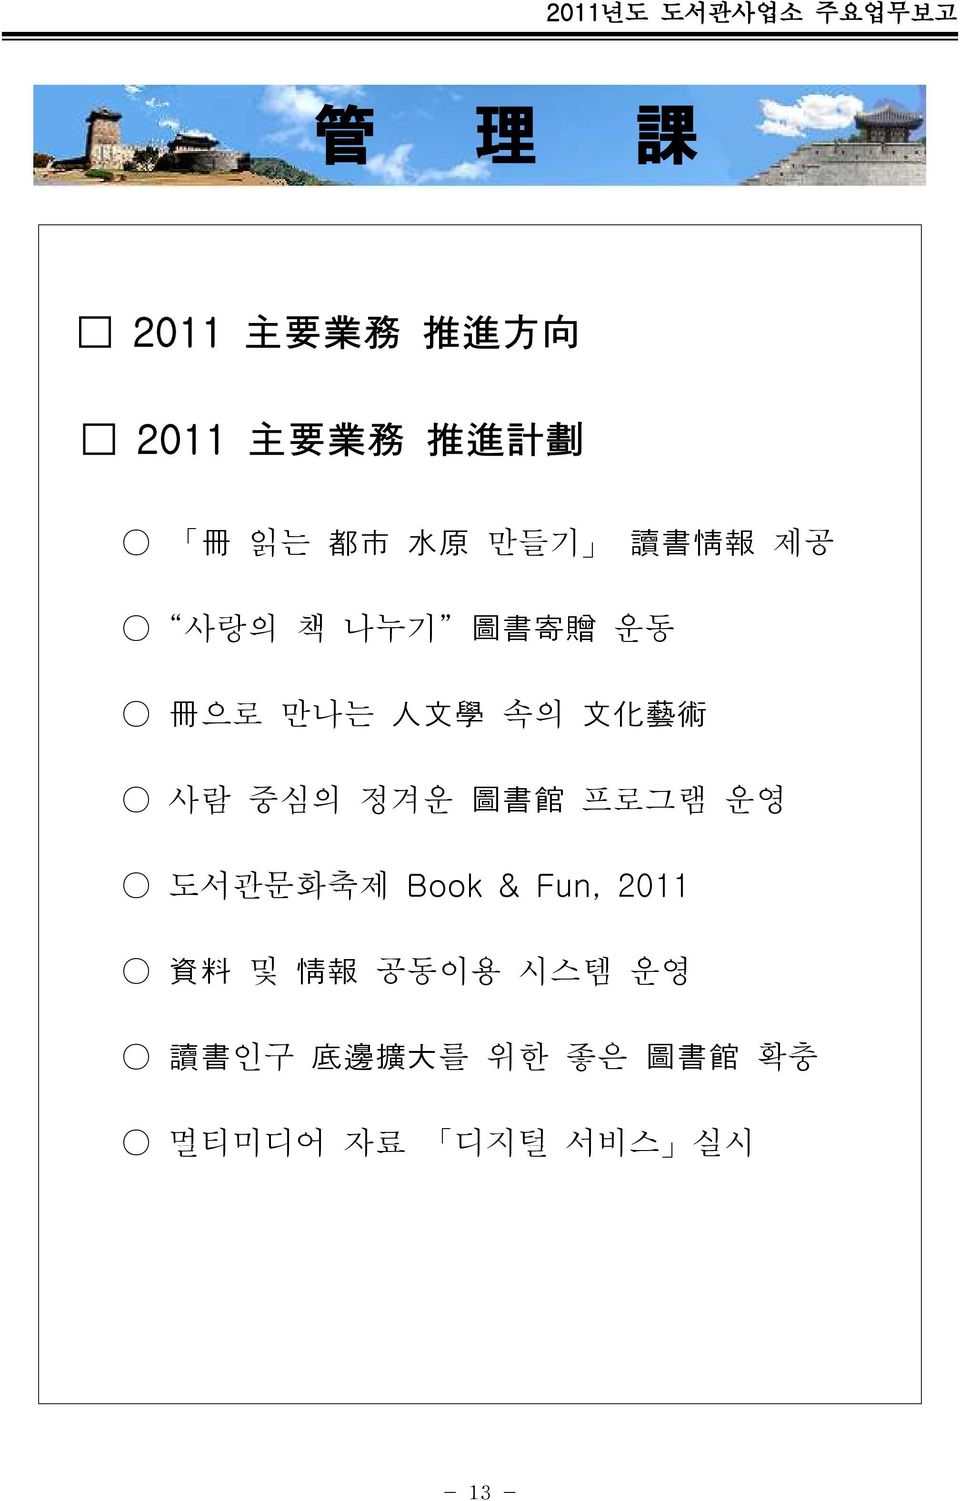 사람 중심의 정겨운 圖 書 館 프로그램 운영 도관문화축제 Book & Fun, 2011 資 料 및 情 報